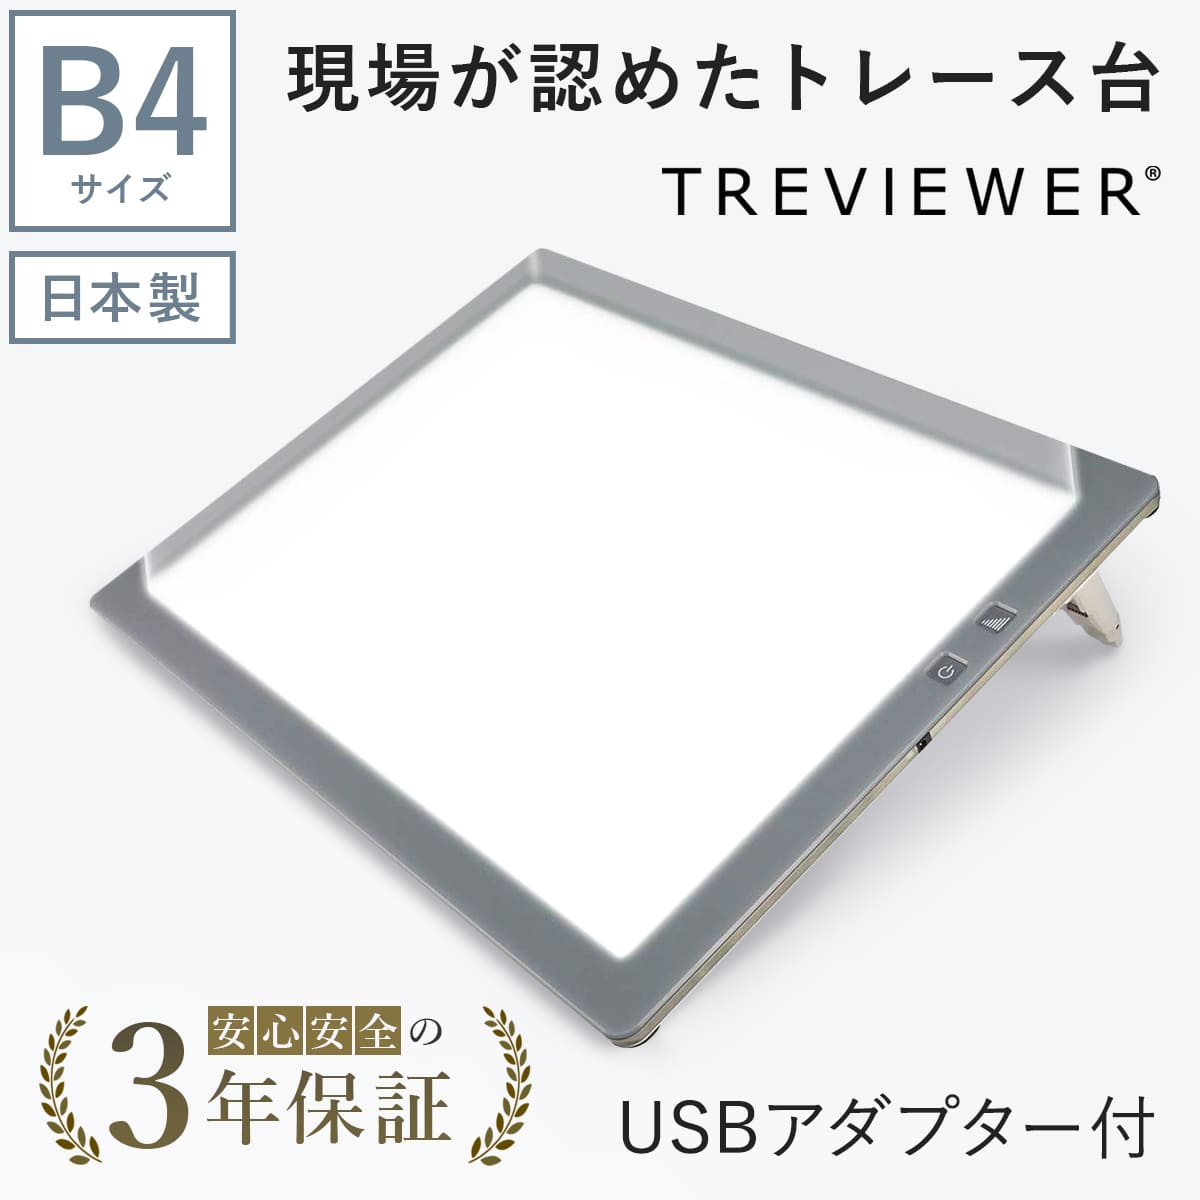 USBケーブル付】【薄型8mm】【7段階調光機能付き】B4サイズ LED